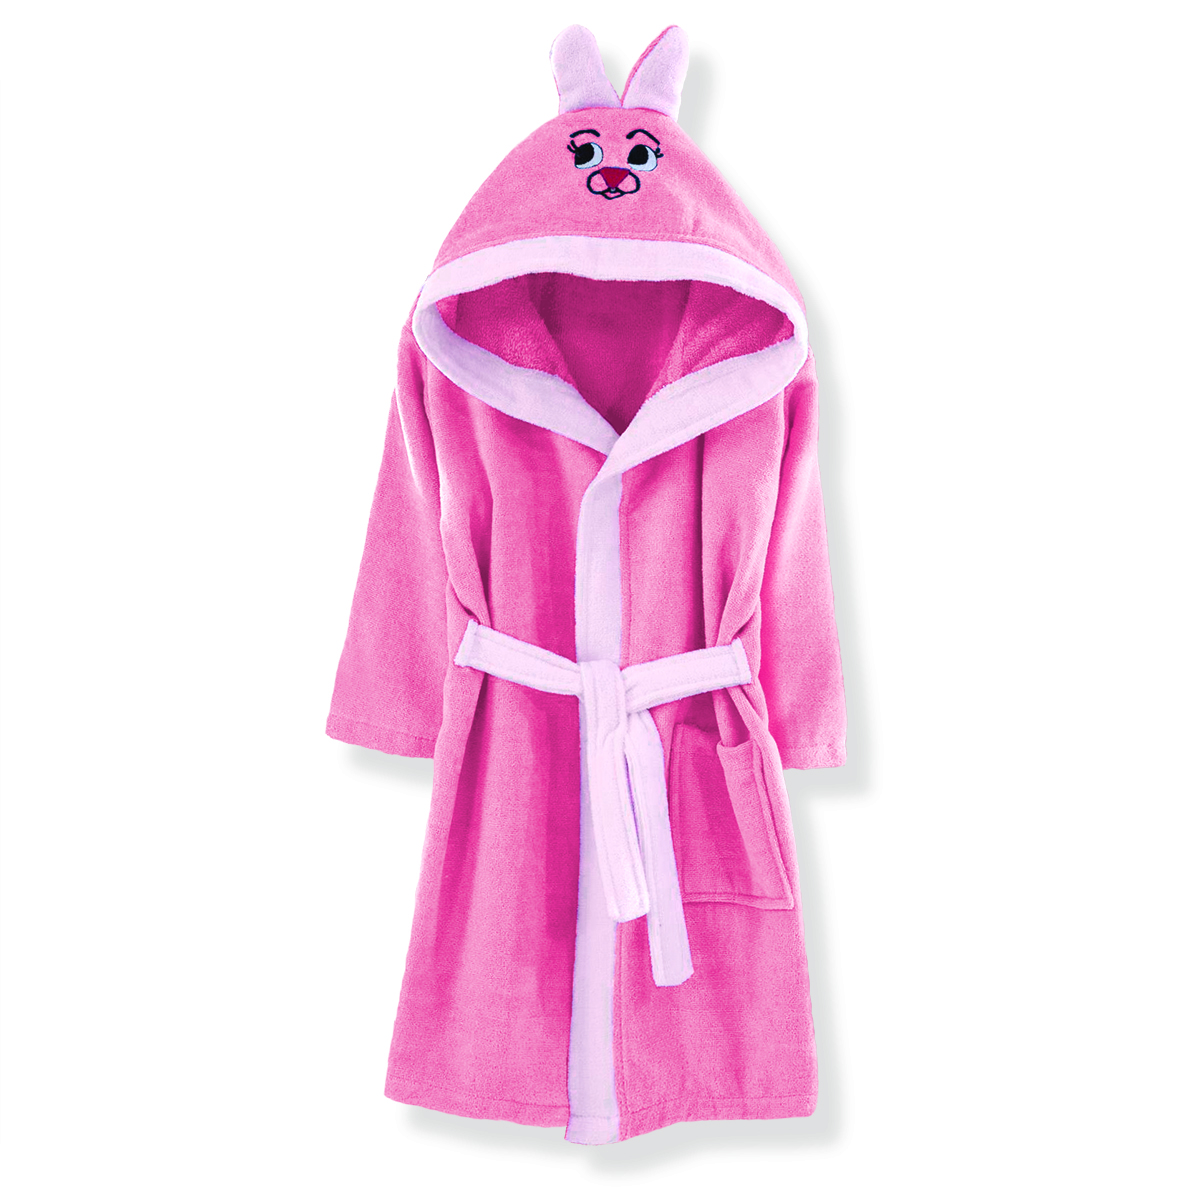 Μπουρνούζι Βαμβακερό Με Κουκούλα Rabbit Pink Νο 6 SBaby (Ύφασμα: Βαμβάκι 100%, Χρώμα: Ροζ) - SBaby - 5206864069497